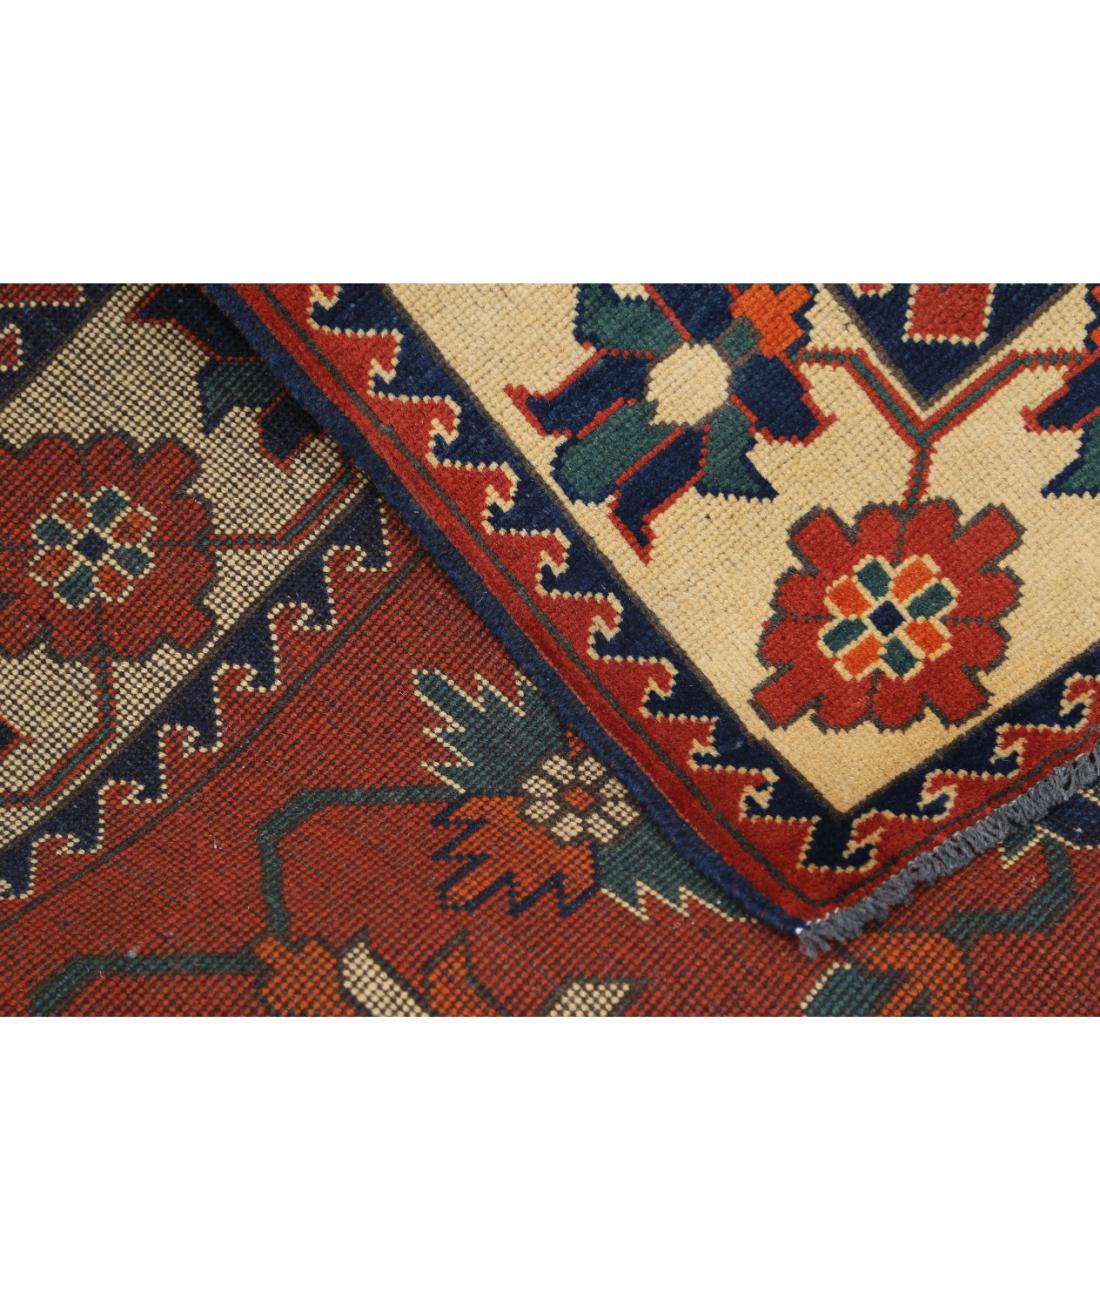 Hand Knotted Afghan Karghai Wool Rug - 4'10'' x 6'3'' 4' 10" X 6' 3" (147 X 191) / Rust / Beige